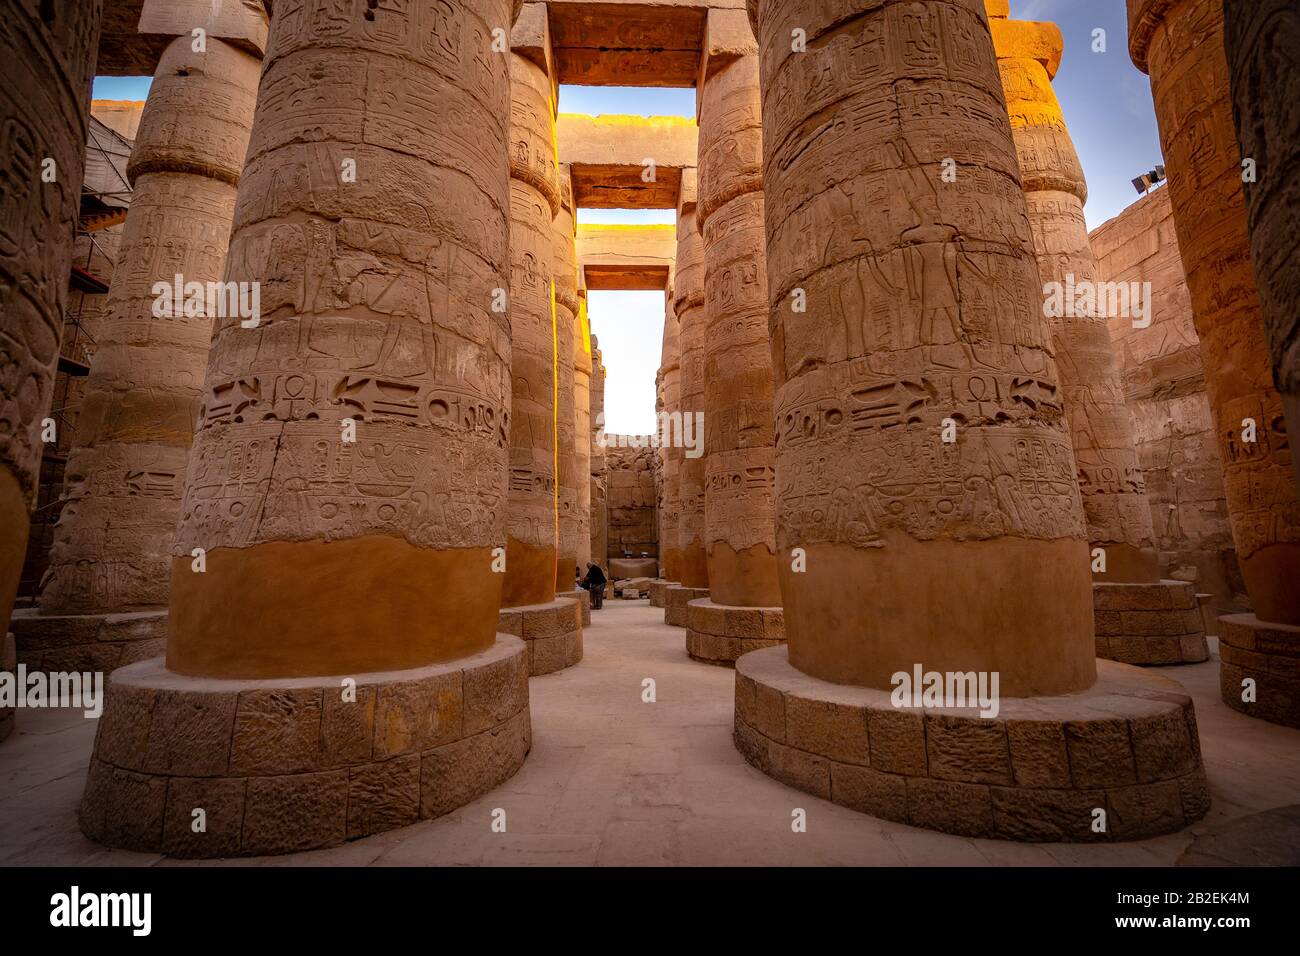 Antiguos pilares cubiertos en dibujos en el Complejo del Templo de Karnak, Luxor, Egipto Foto de stock